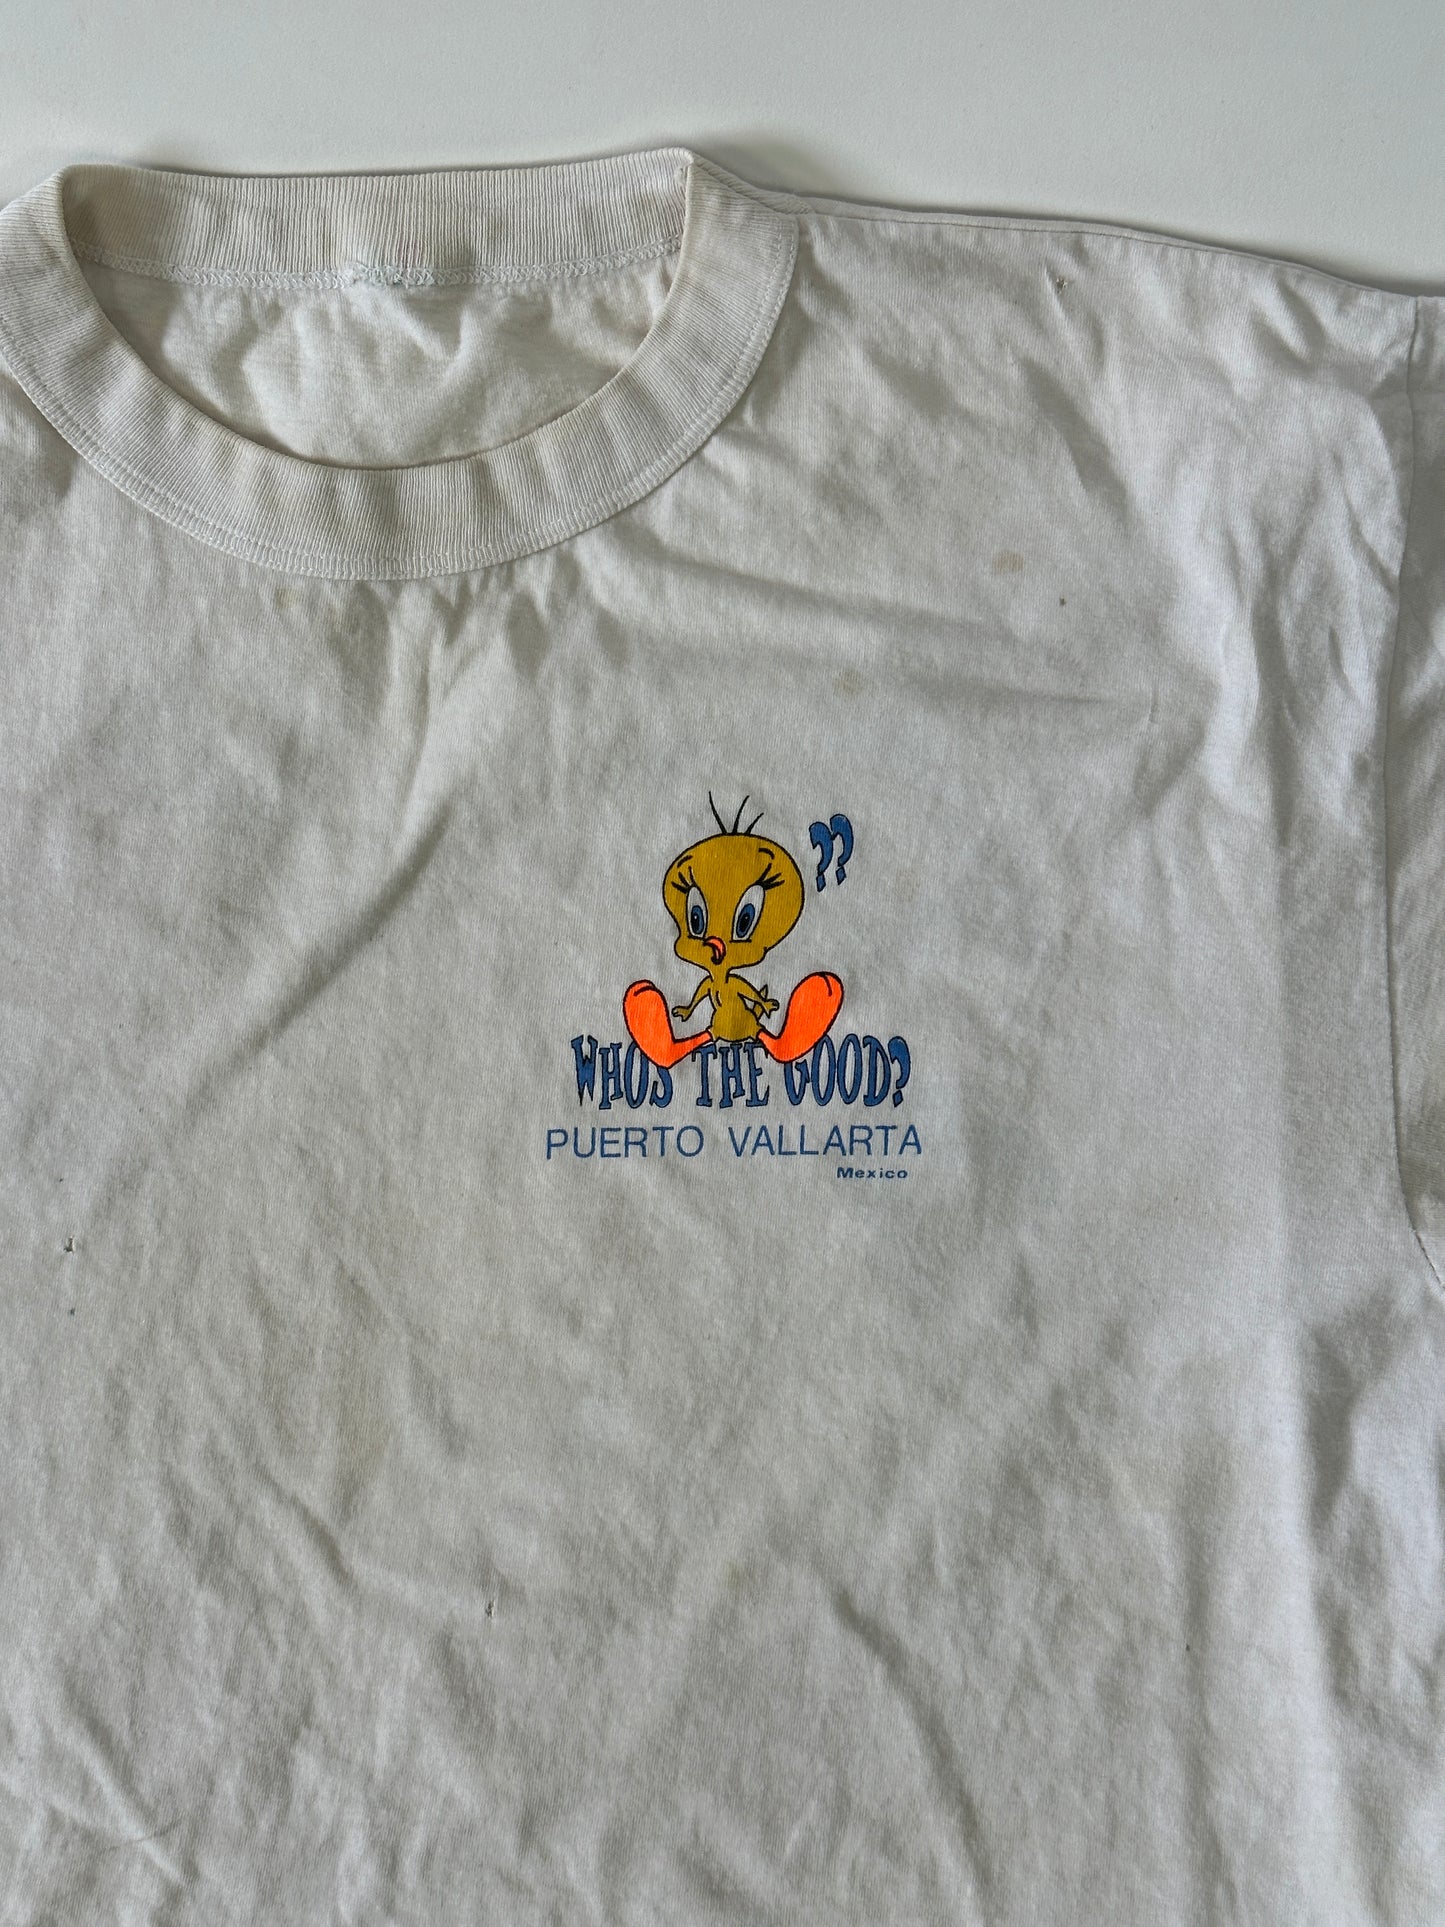 Piolin Puerto Vallarta Vintage T-Shirt - L